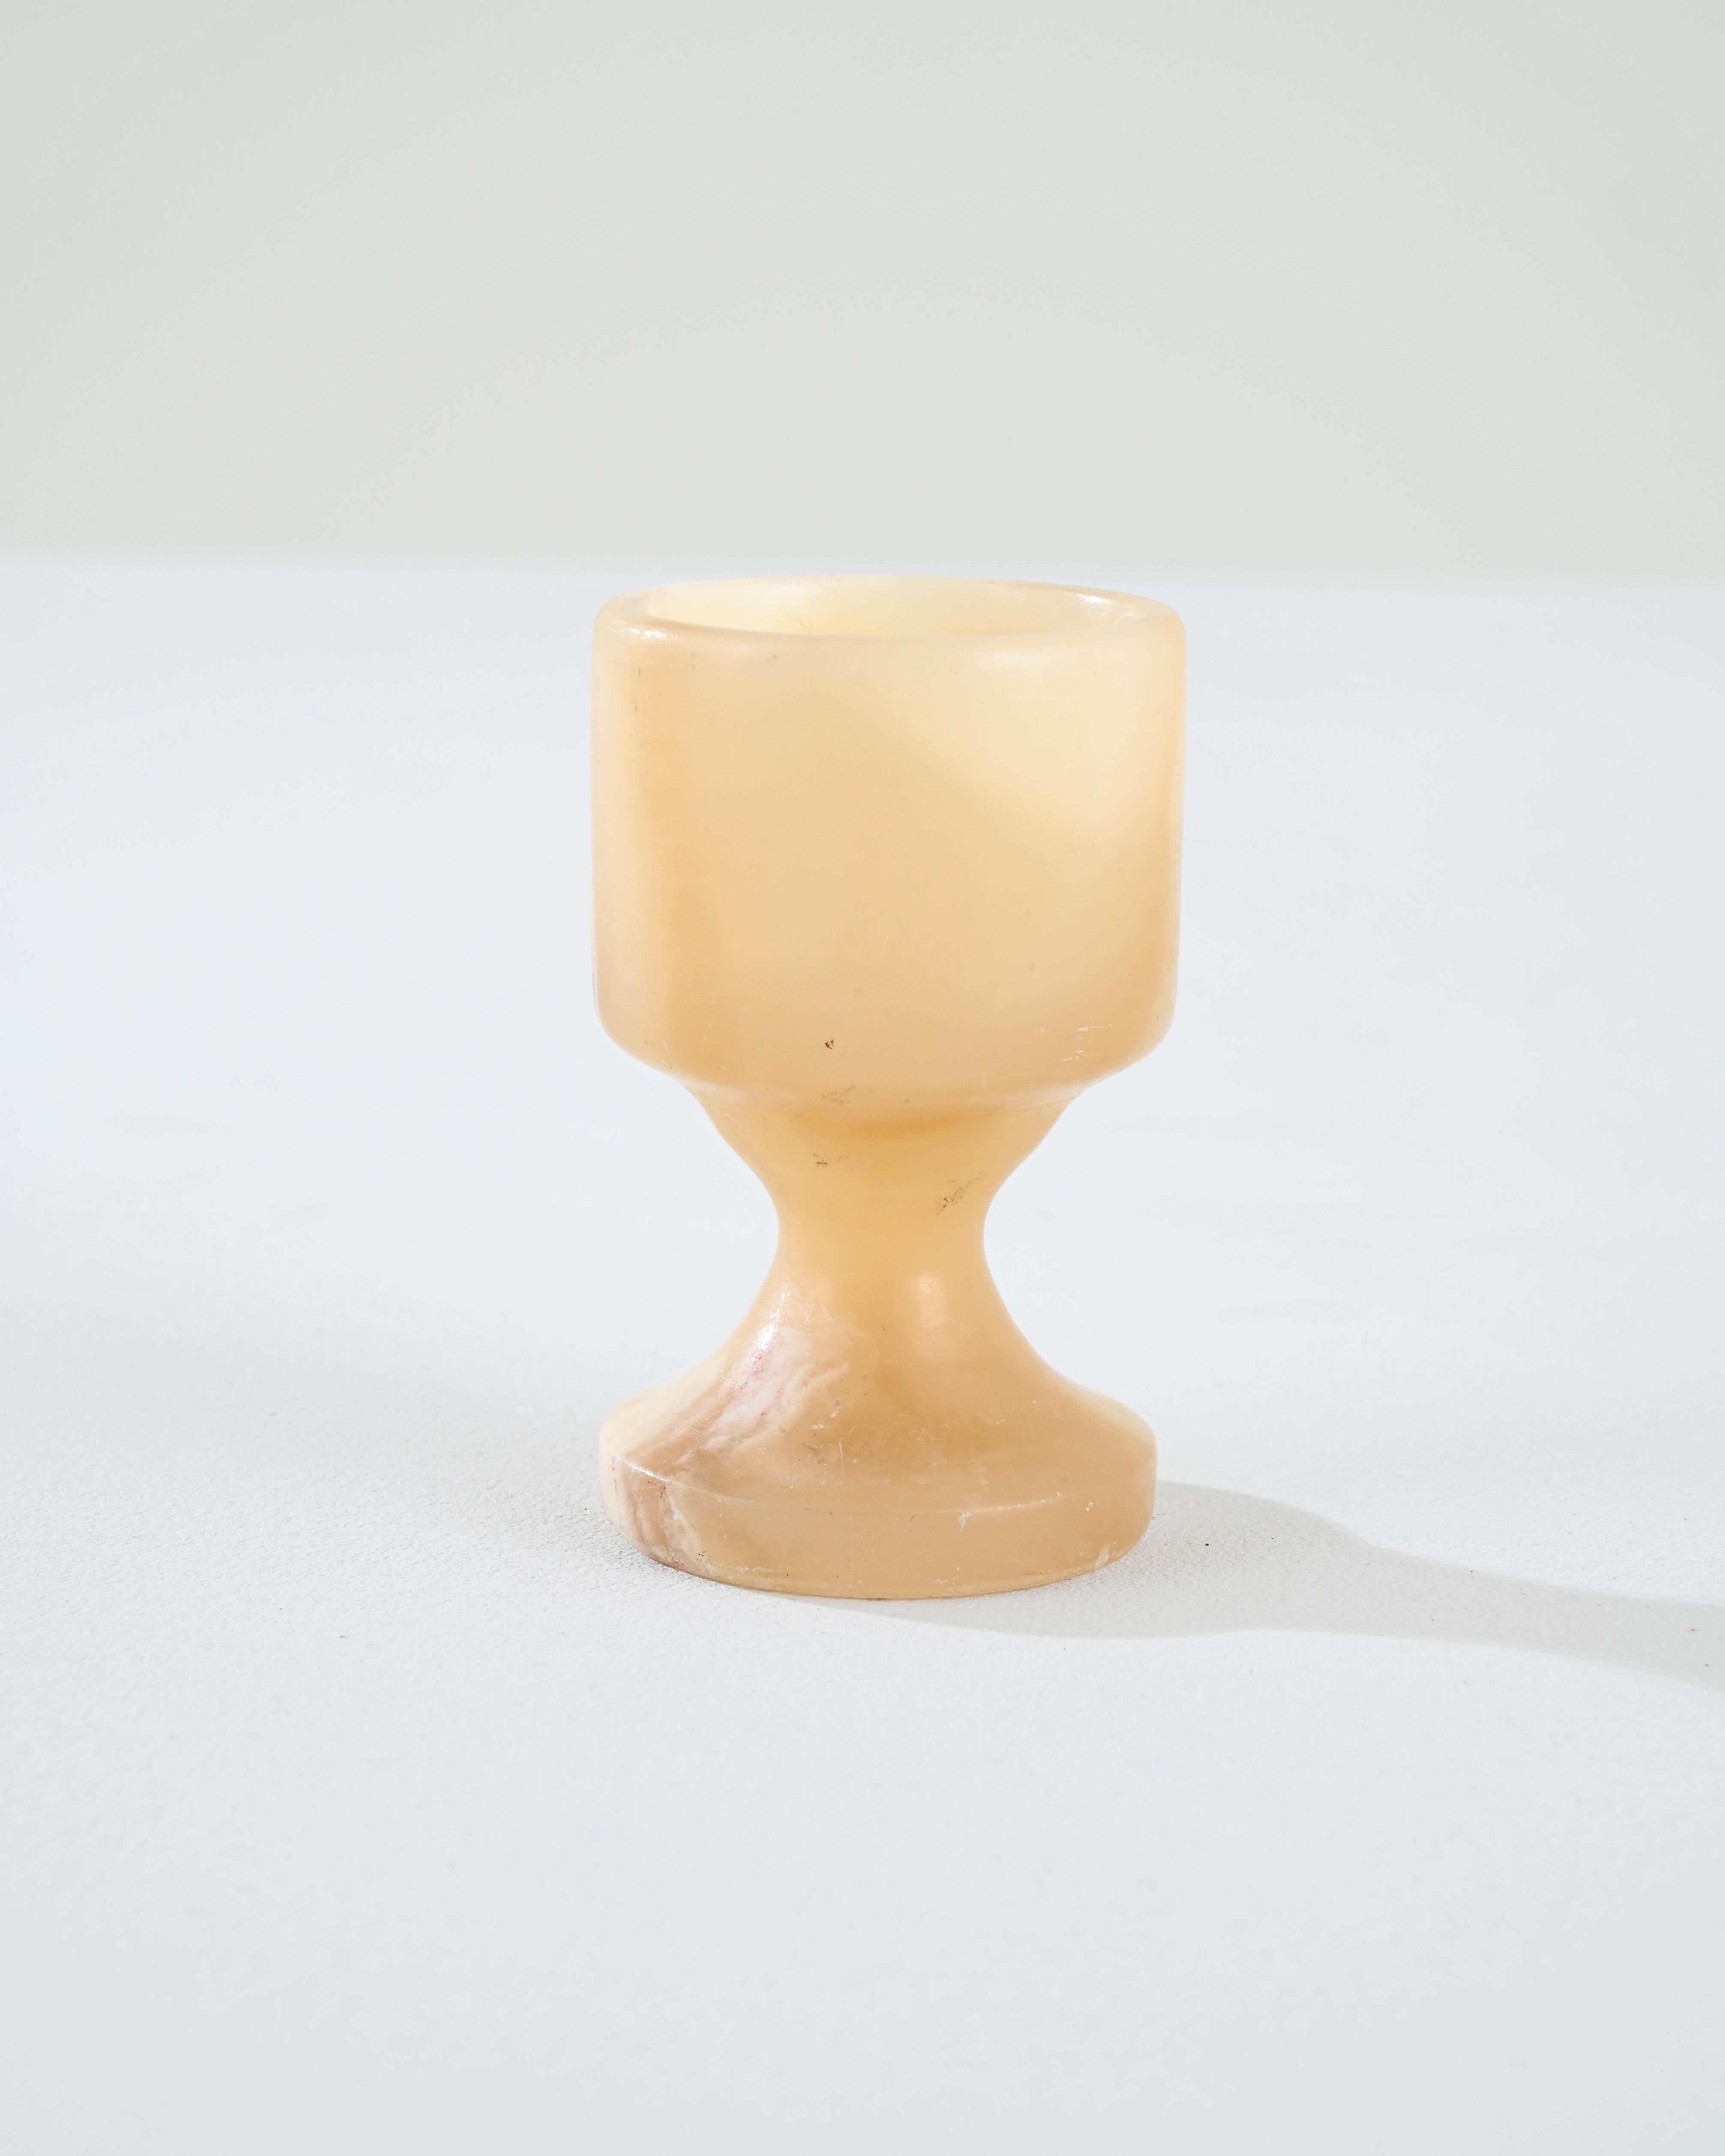 Un calice en marbre fabriqué en France au XIXe siècle. Ce petit verre à boire affiche une disposition lumineuse et ensoleillée, fabriquée avec un savoir-faire artisanal simple et raffiné. Des veines de détails plus sombres traversent en diagonale le